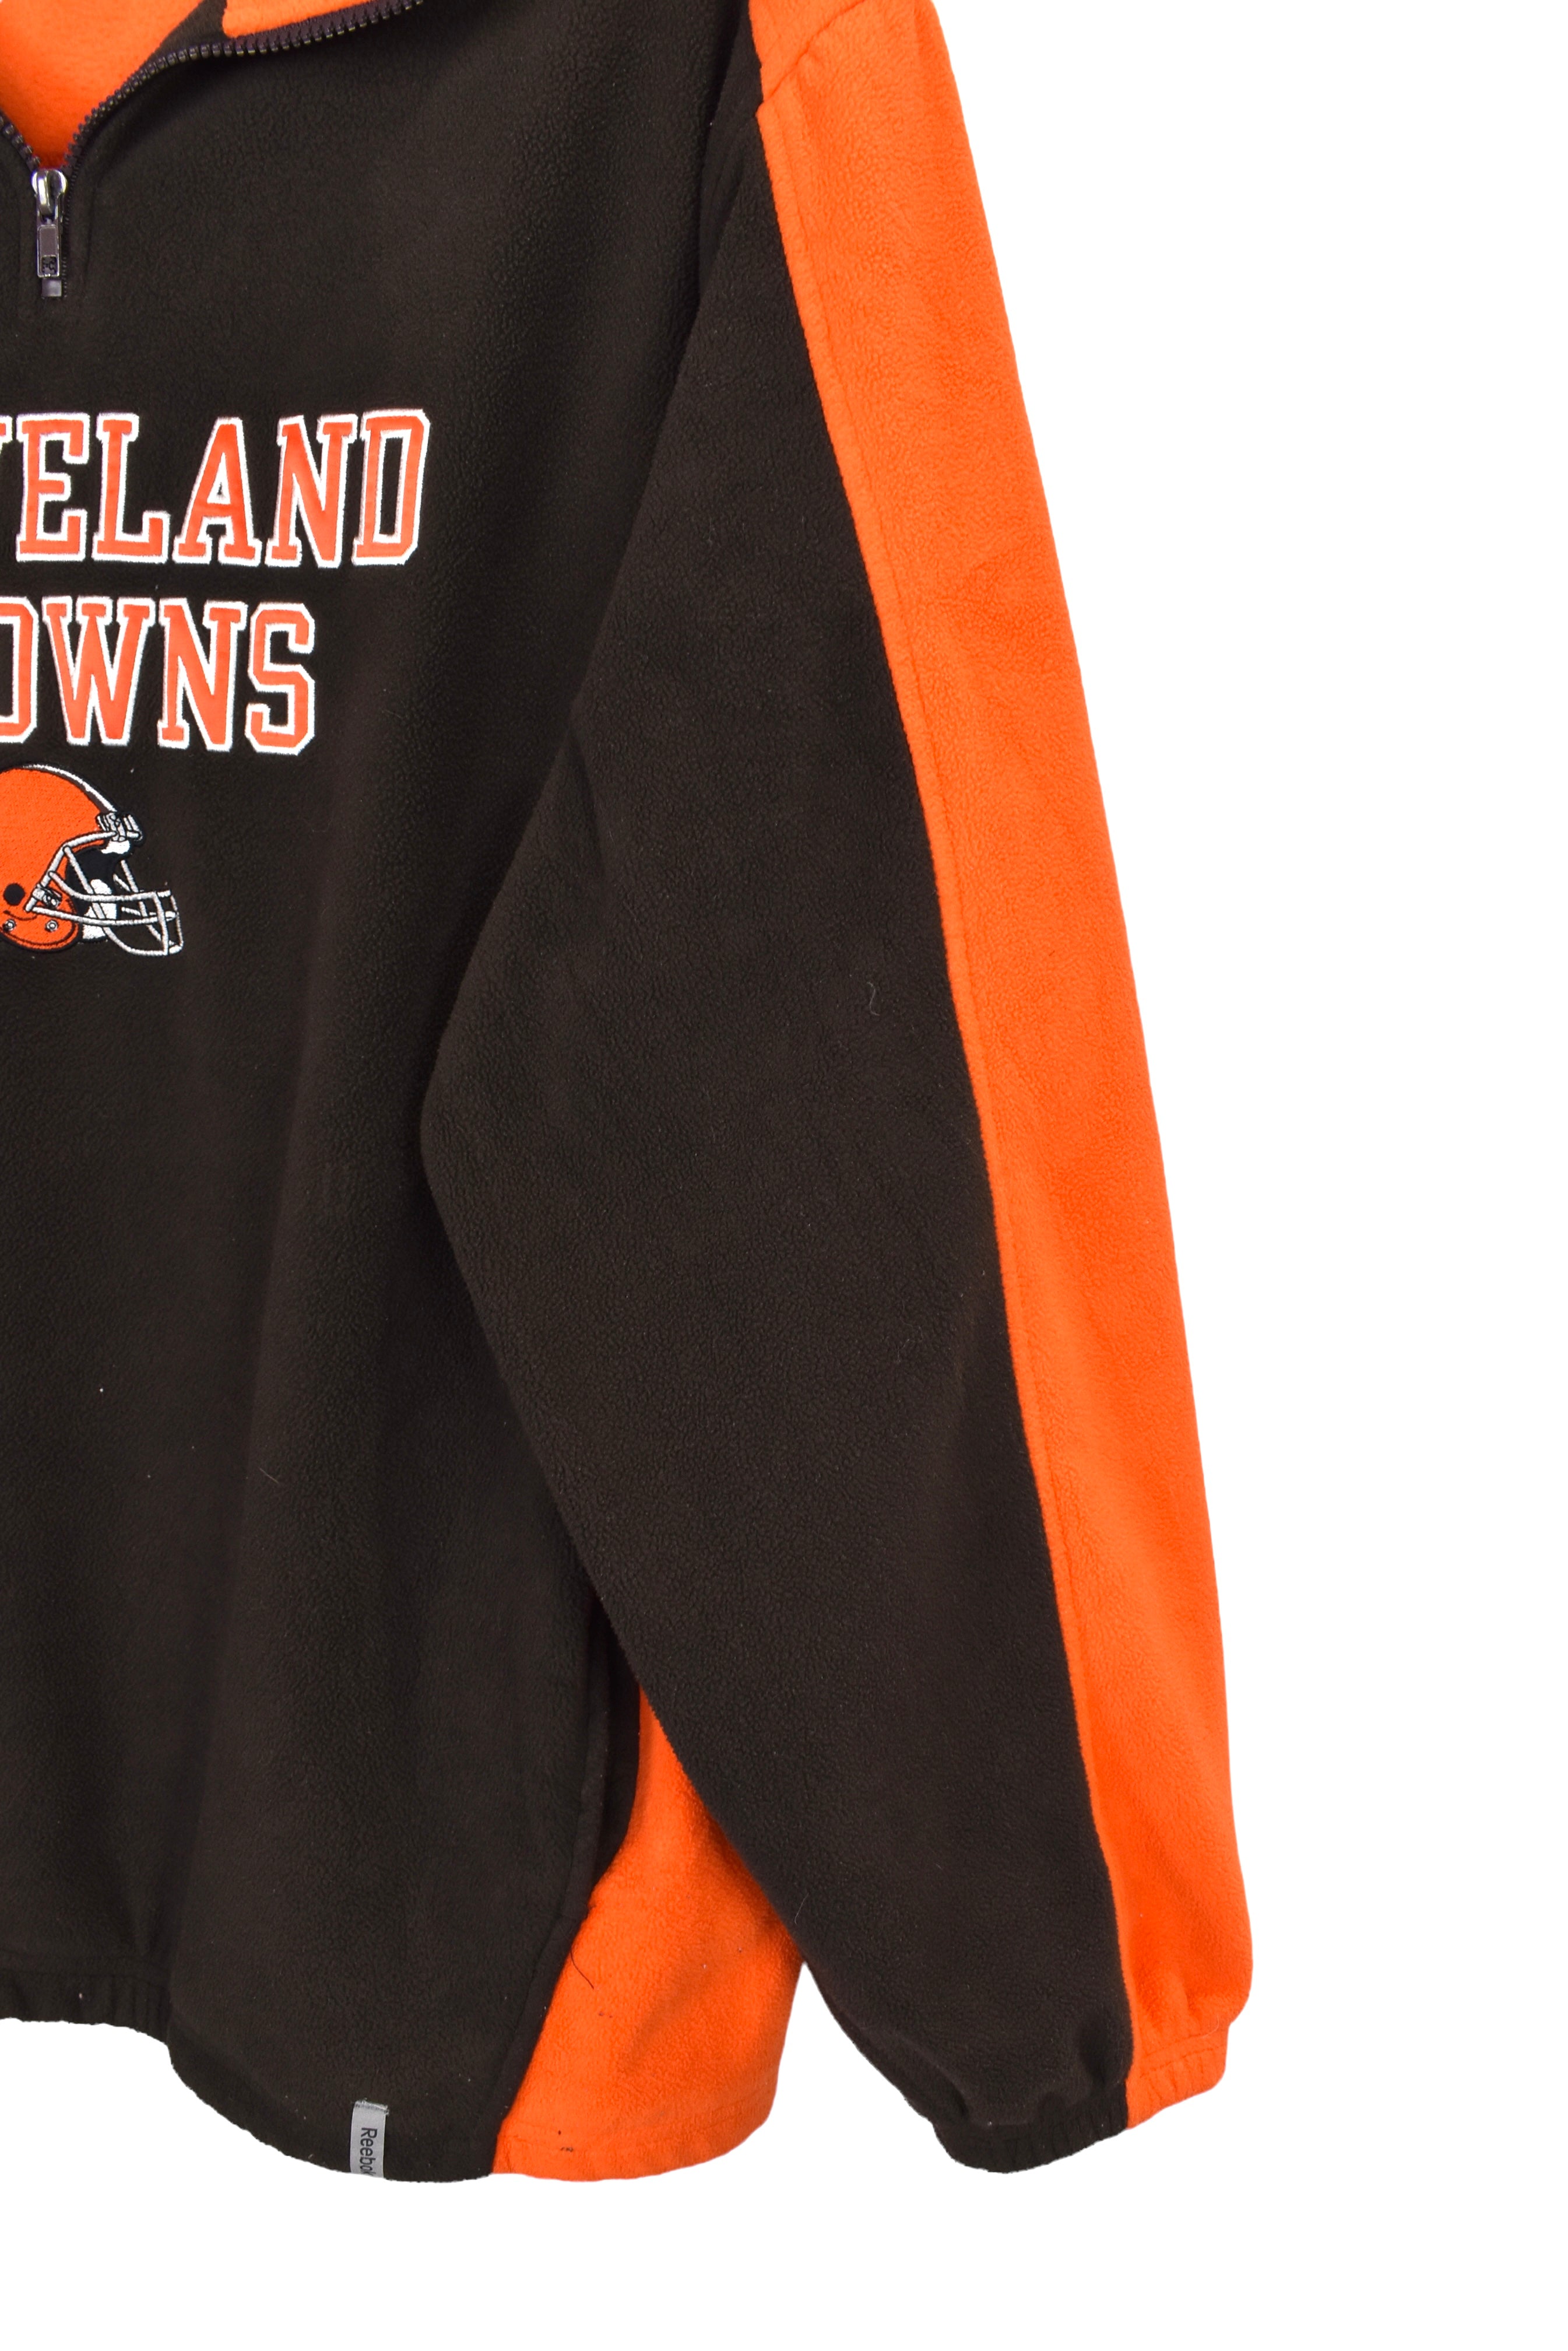 Vintage Cleveland Browns fleece XL, brown embroidered sweatshirt